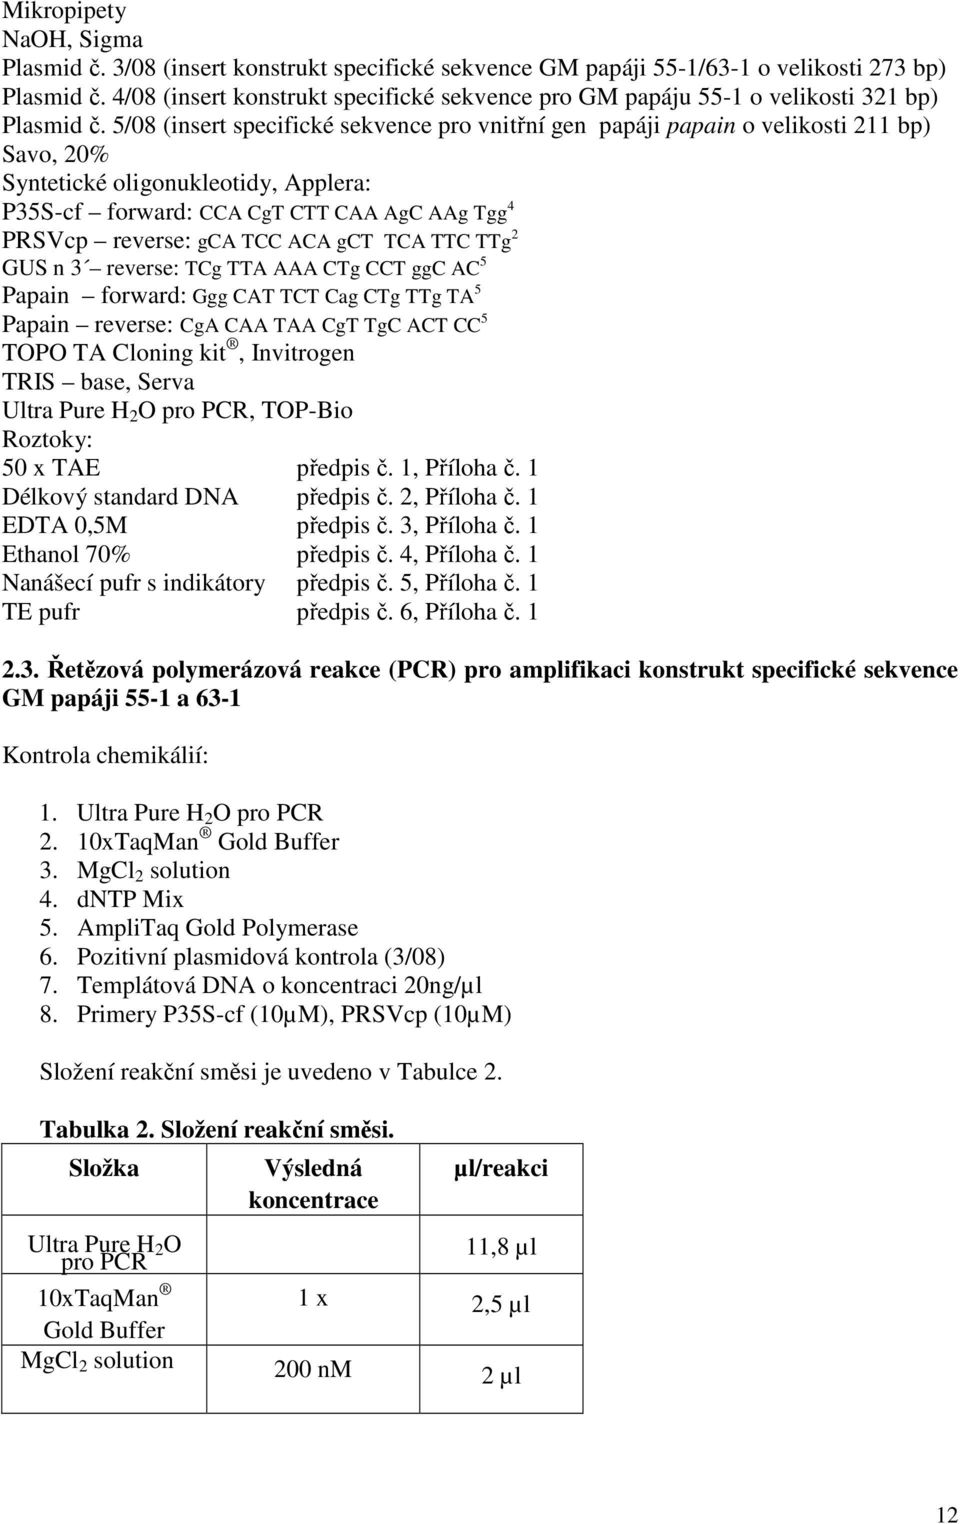 5/08 (insert specifické sekvence pro vnitřní gen papáji papain o velikosti 211 bp) Savo, 20% Syntetické oligonukleotidy, Applera: P35S-cf forward: CCA CgT CTT CAA AgC AAg Tgg 4 PRSVcp reverse: gca